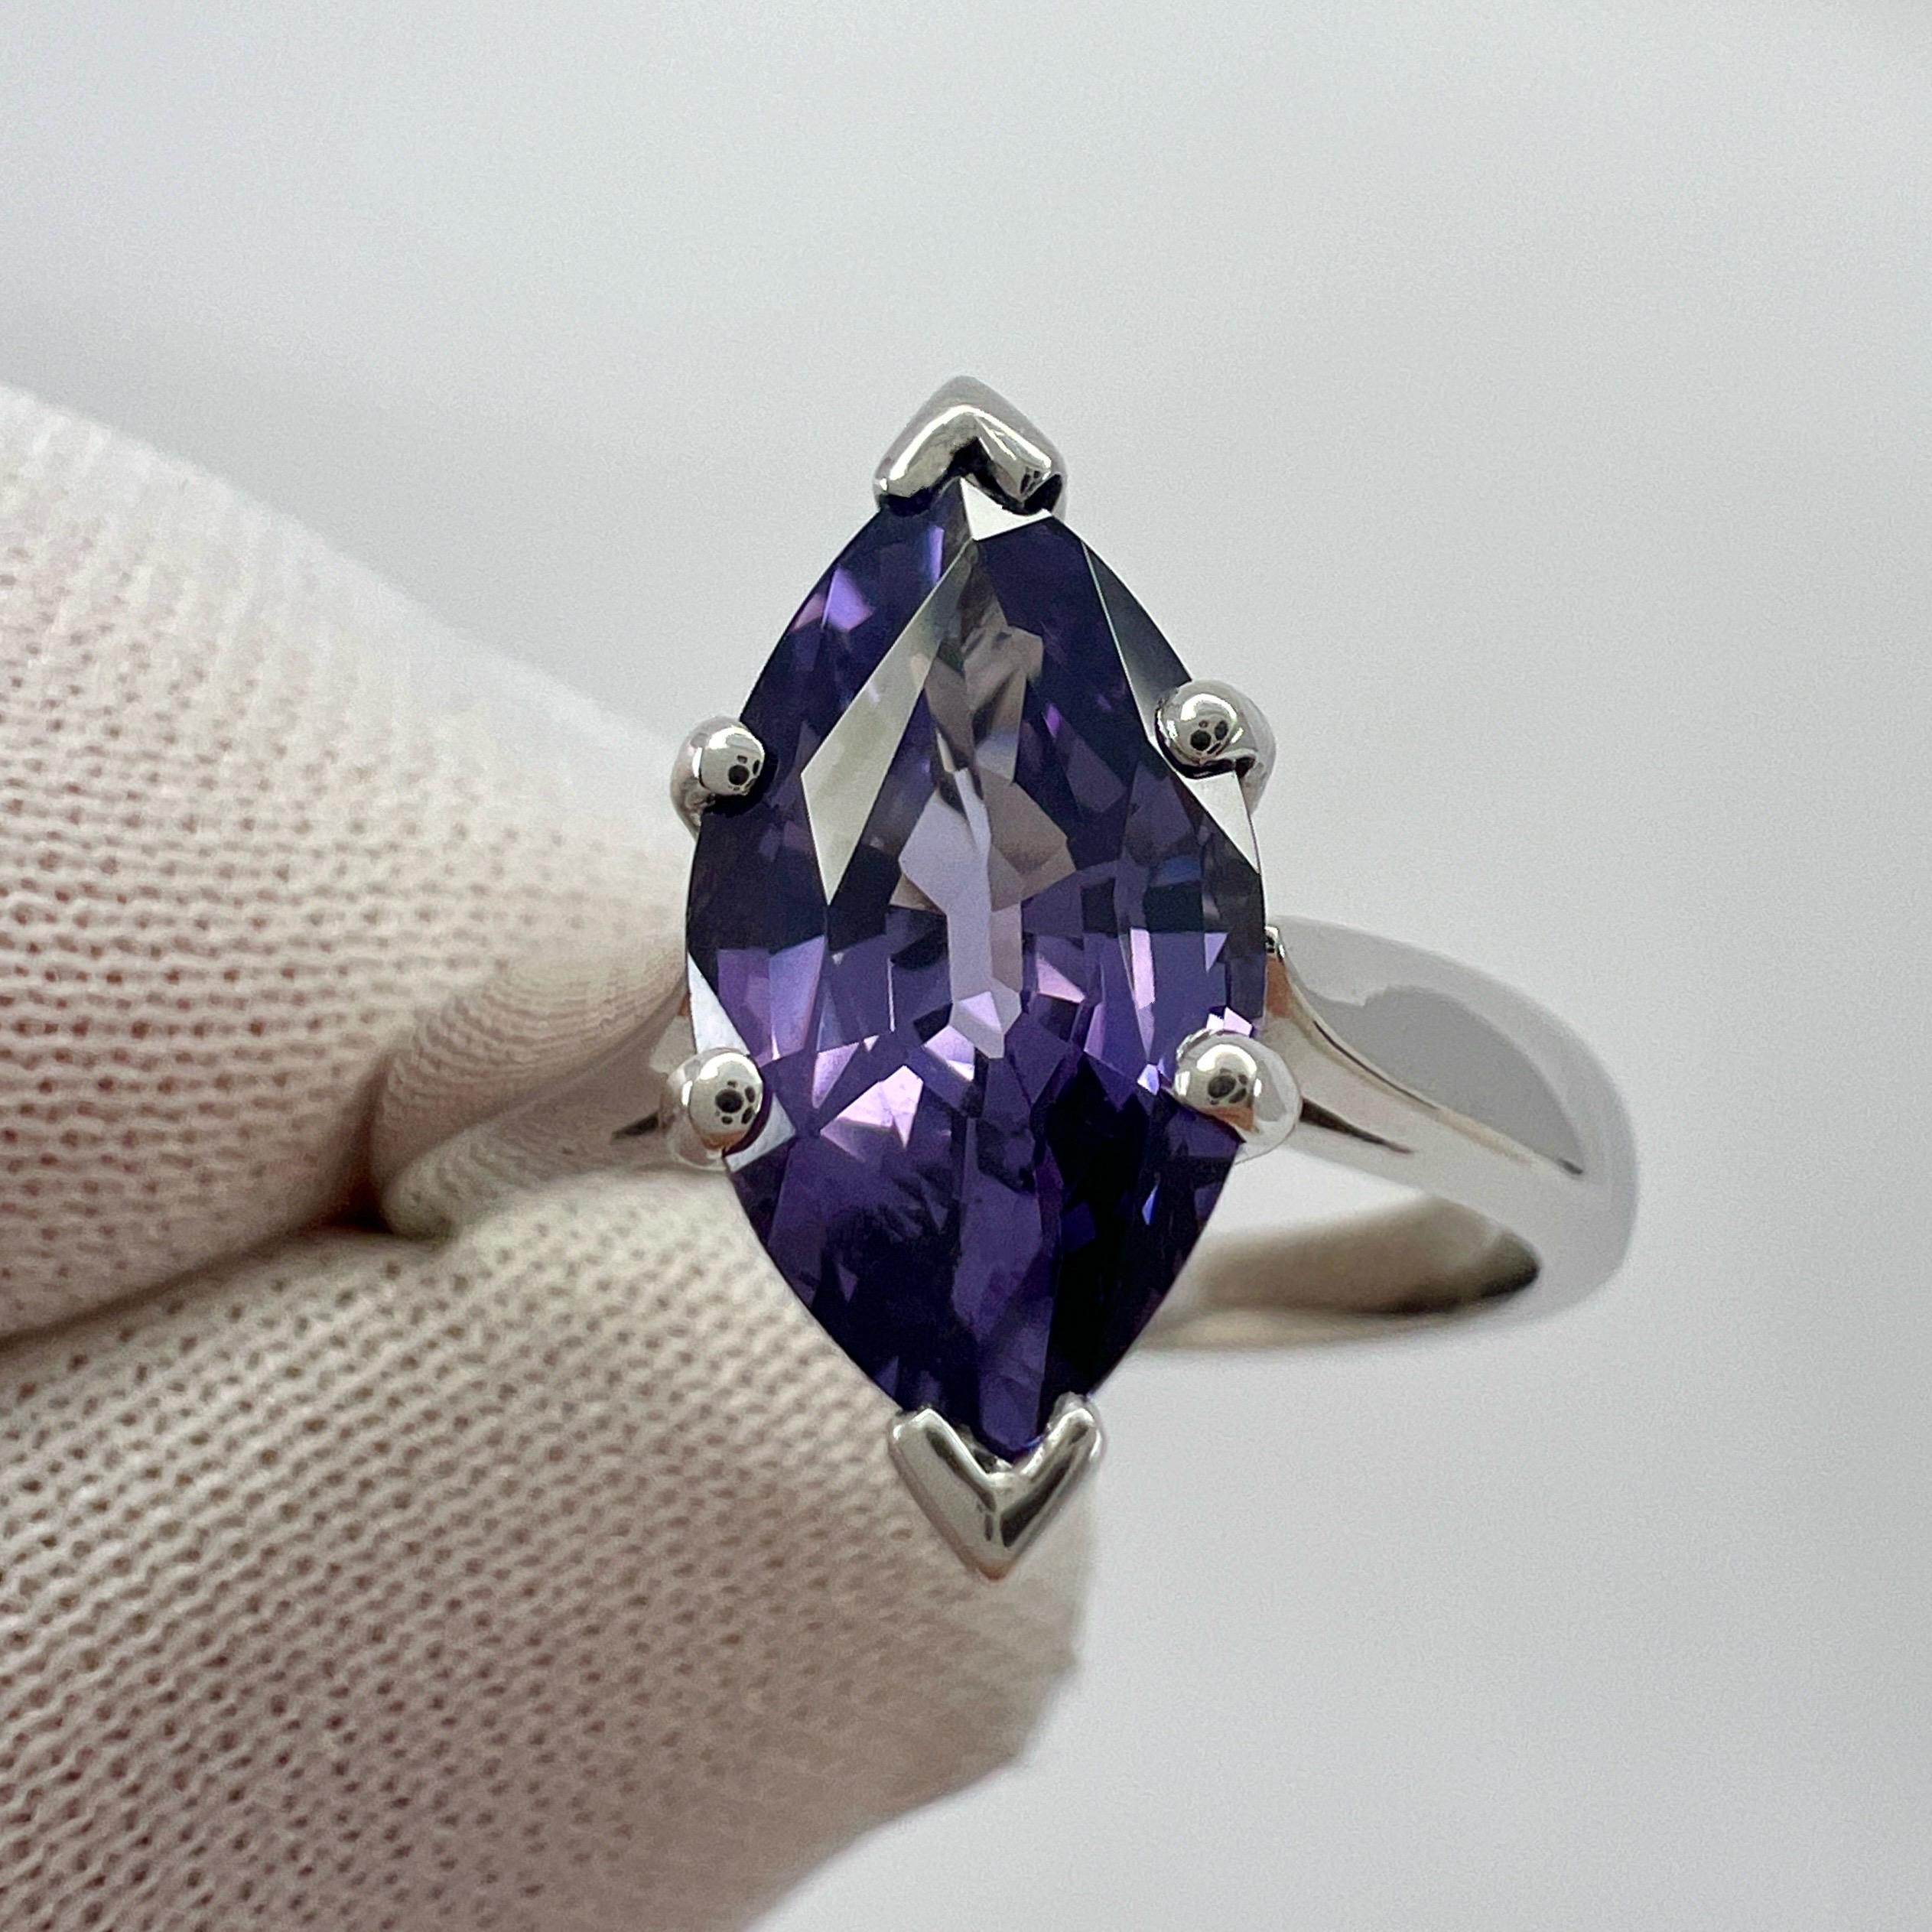 Fine Nature Vivid Purple Violet Spinel 18k White Gold Solitaire Ring.

Spinelle de 2,13 carats d'une étonnante couleur violet vif et d'une excellente clarté. Pierre unique et de qualité supérieure.

Le spinelle présente également une excellente